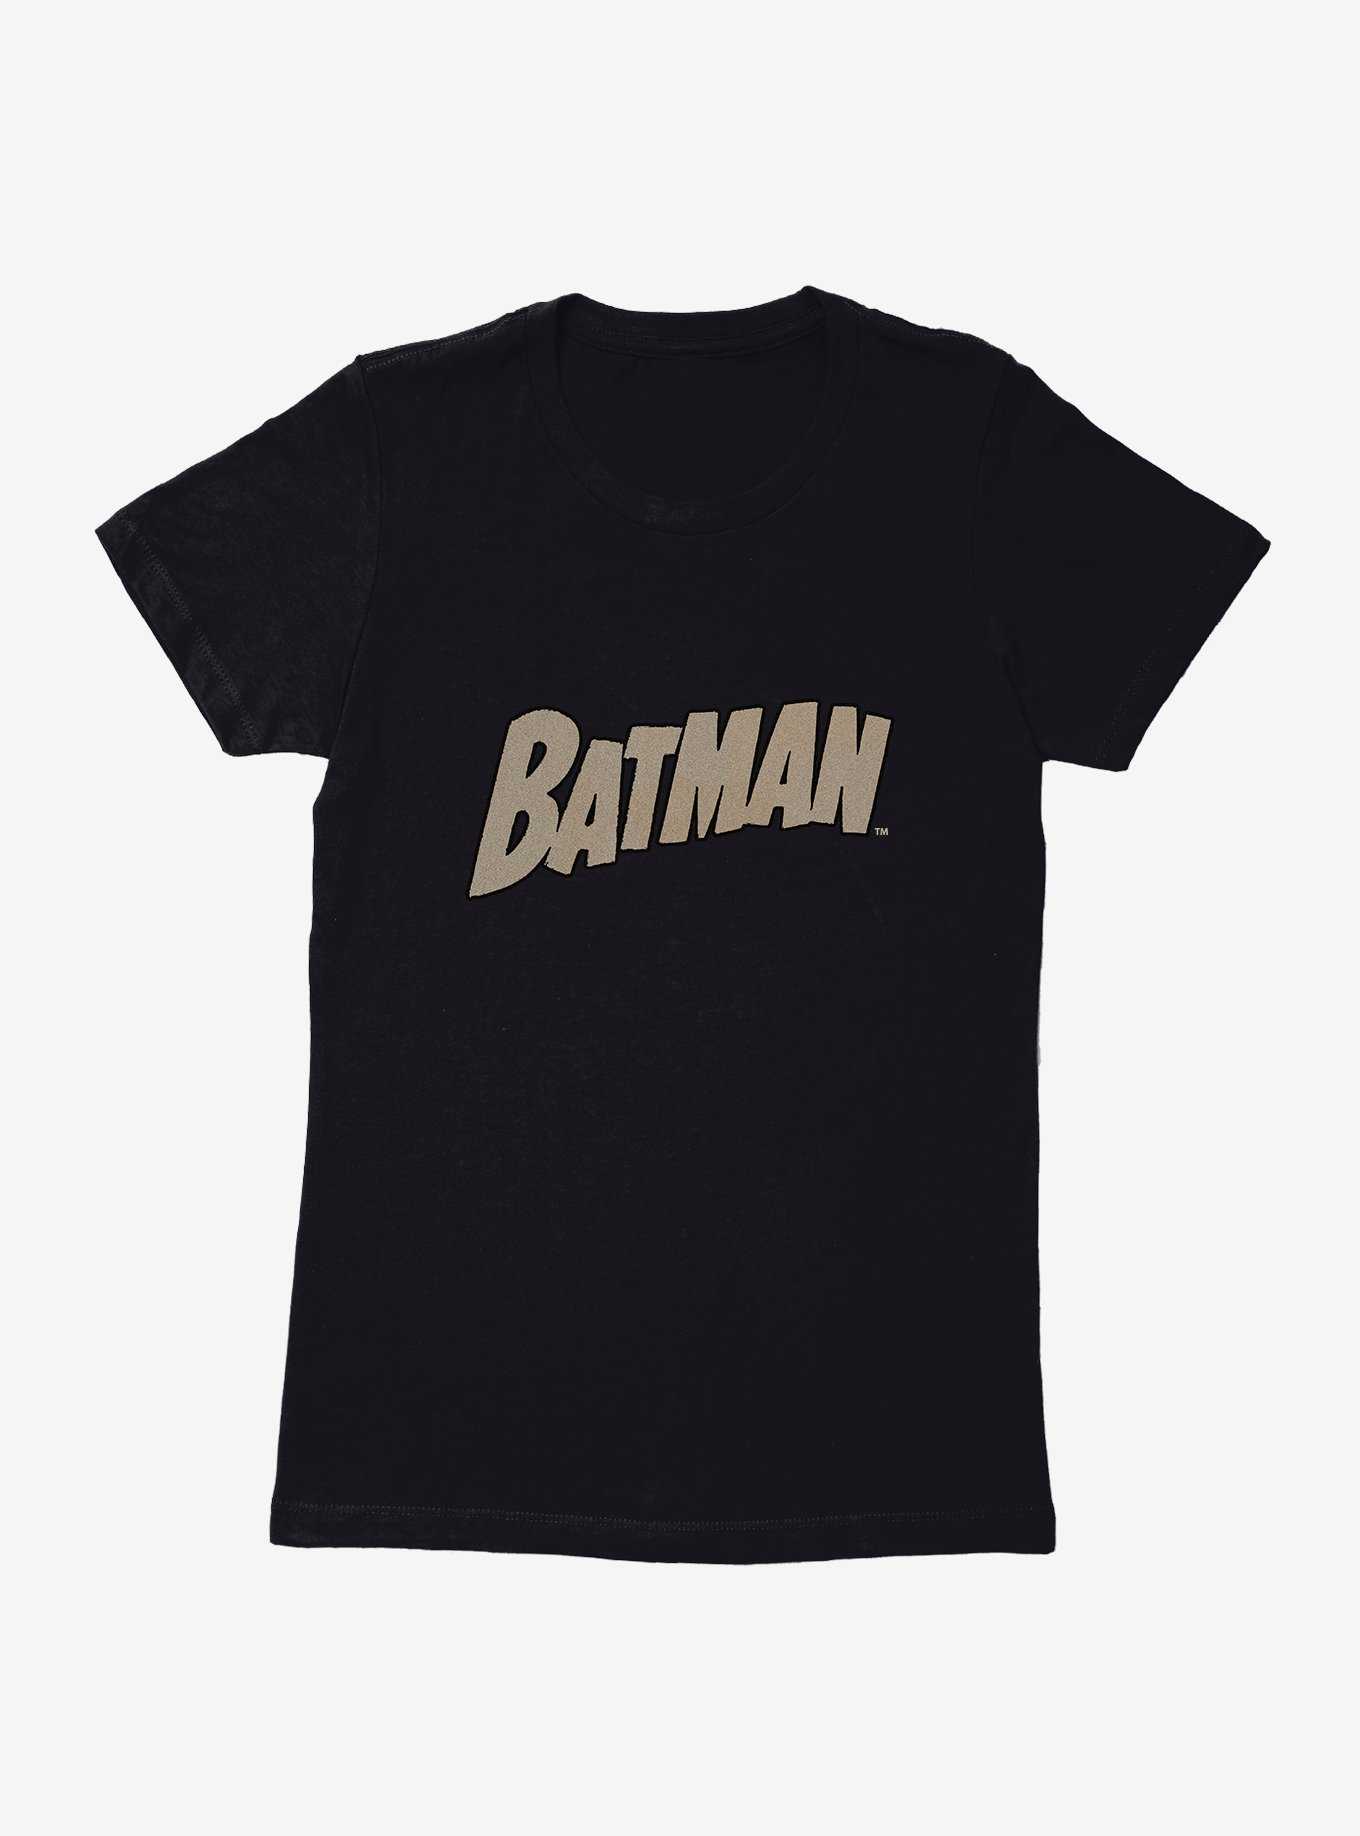 DC Comics Batman Name Logo Womens T-Shirt, , hi-res